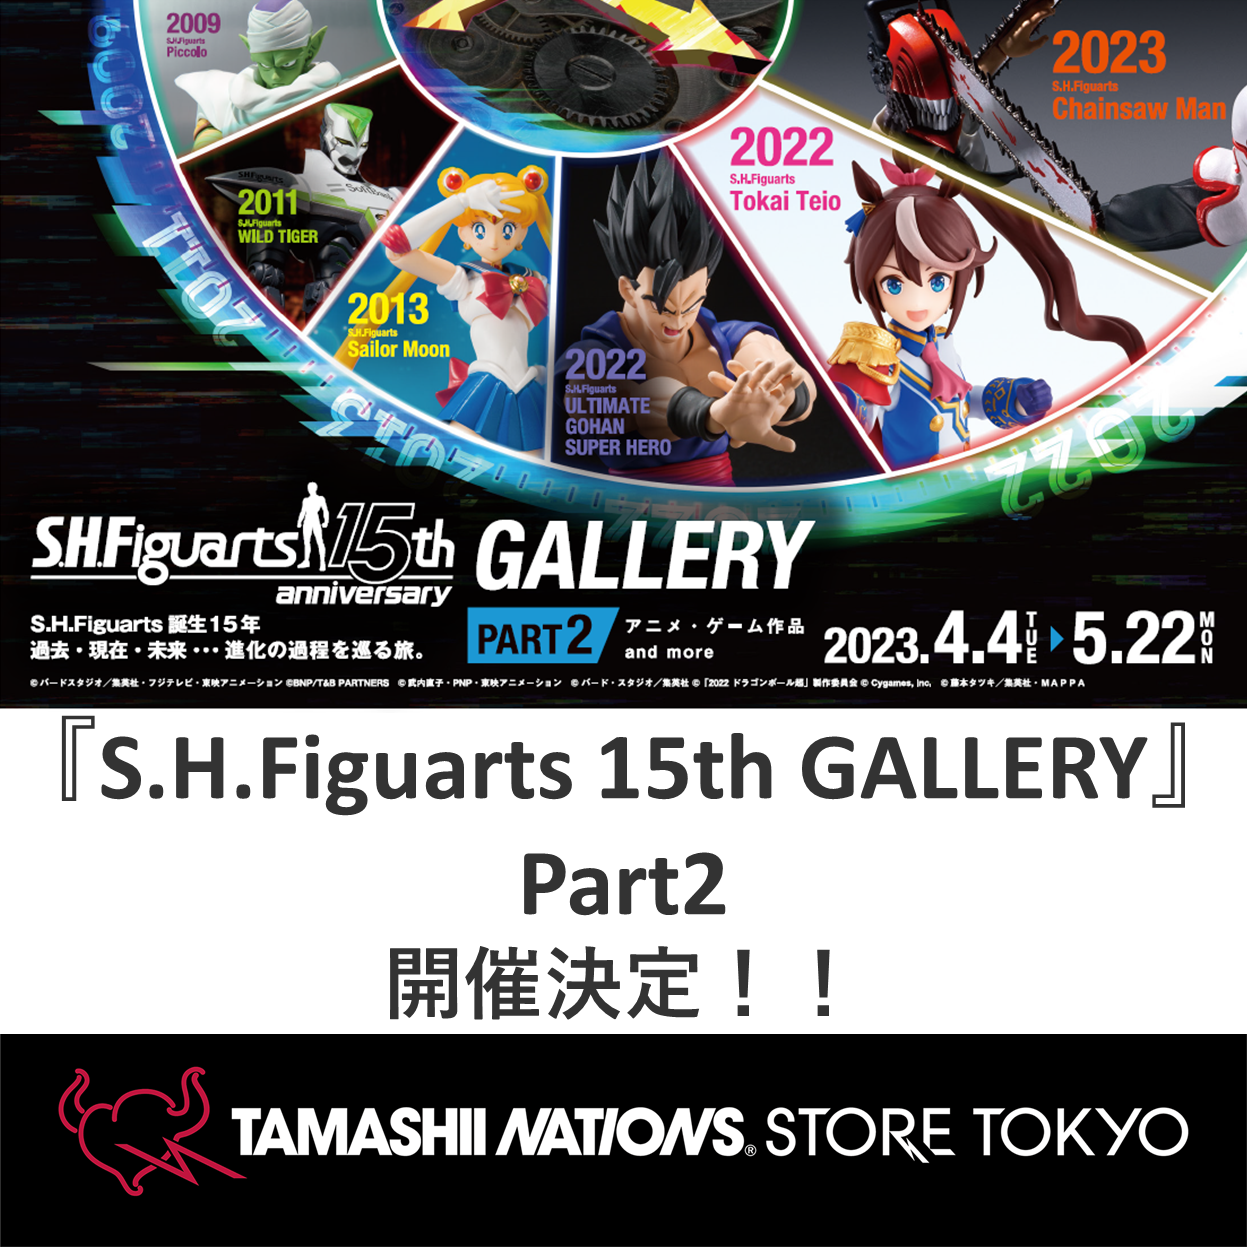 特別網站【TAMASHII STORE】展覽活動“ S.H.Figuarts第十五畫廊-第2部分-”資訊發佈通知！